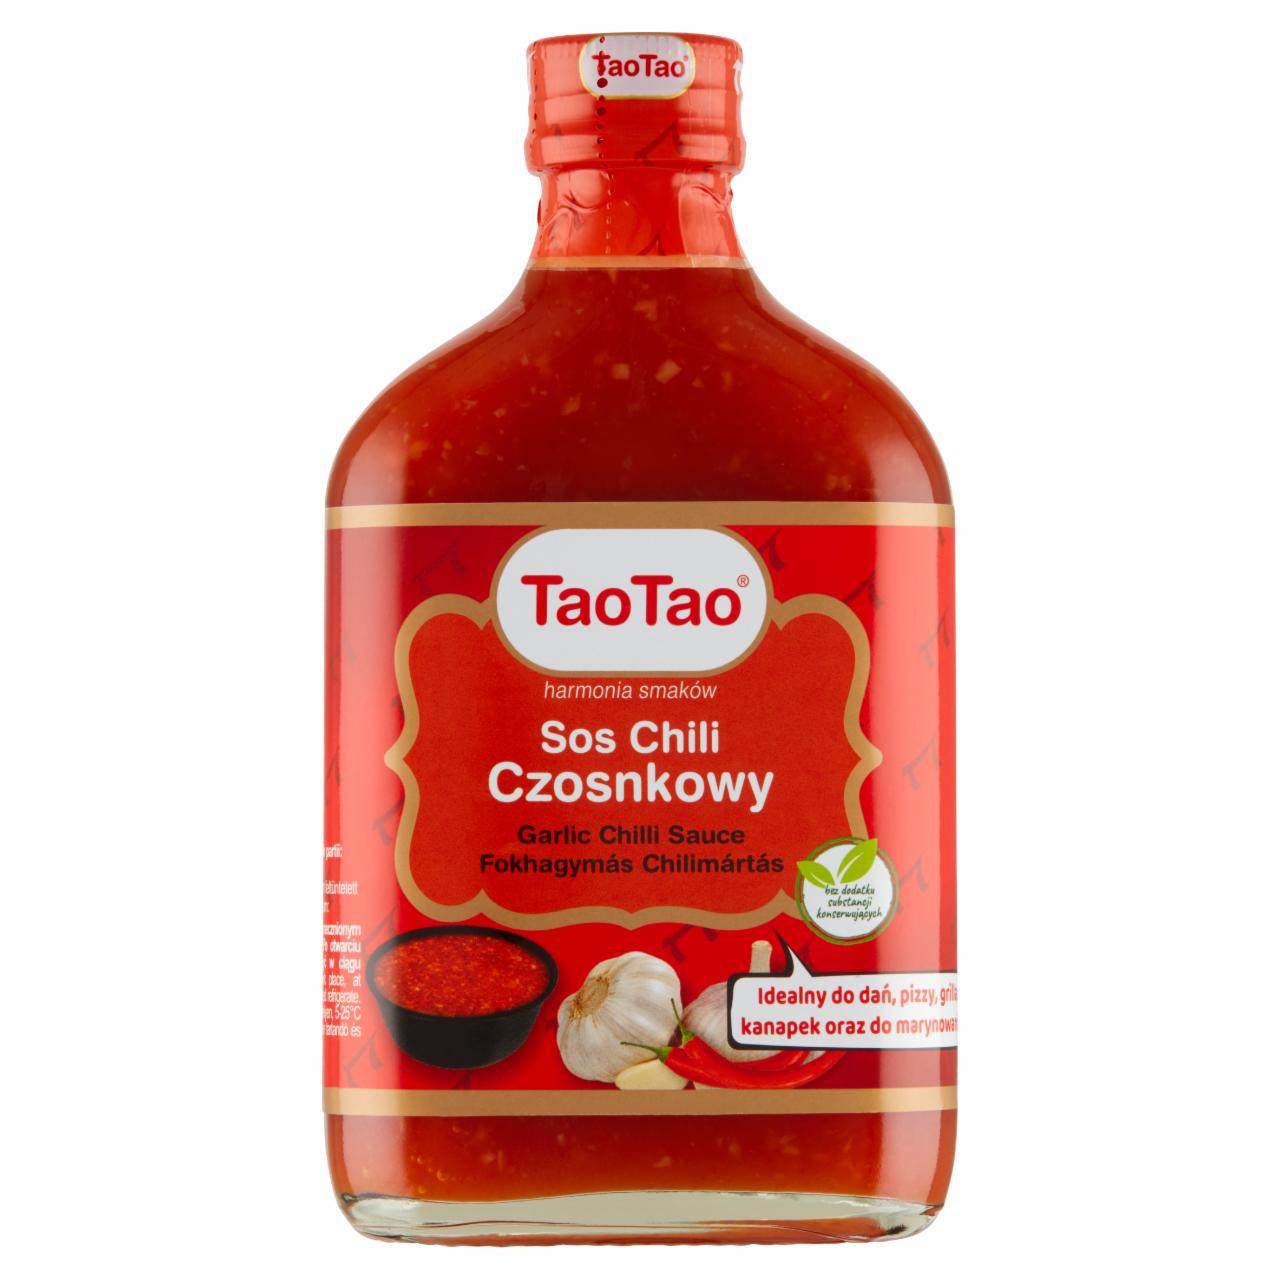 Zdjęcia - Tao Tao Sos chili czosnkowy 175 ml